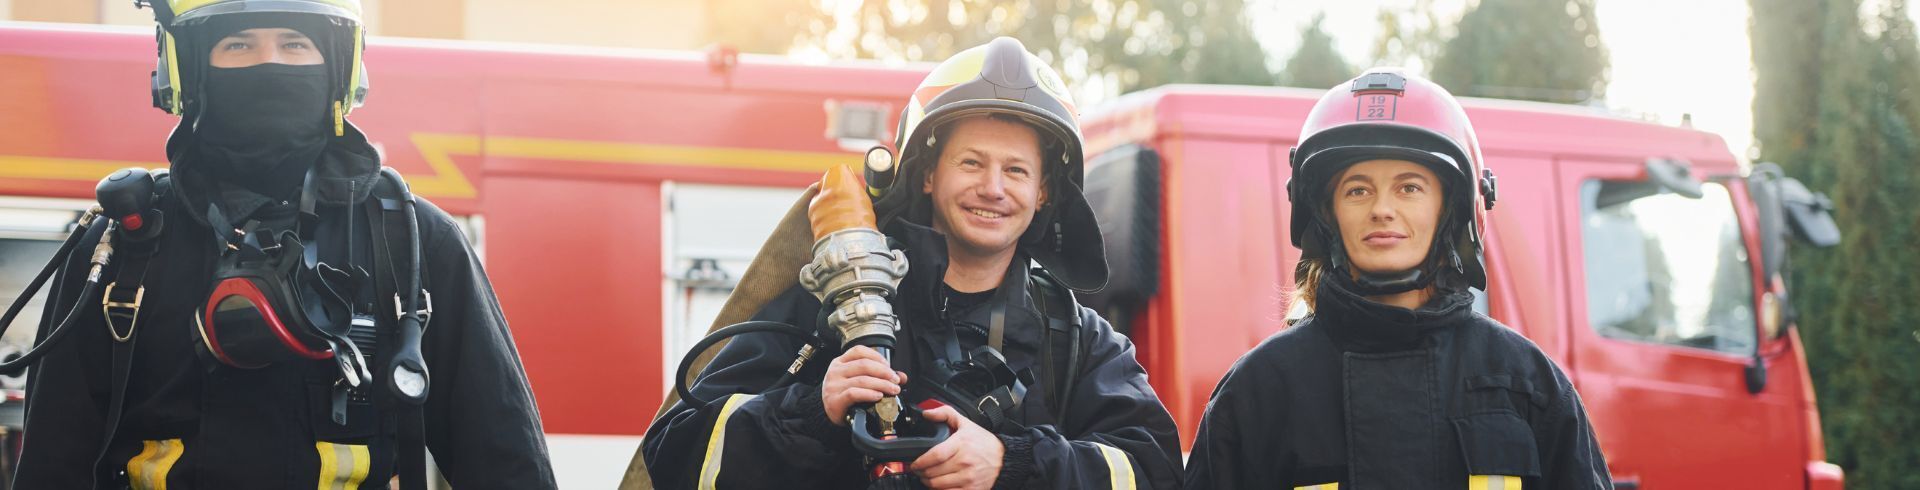 devenir sapeur pompier volontaire saisonnier